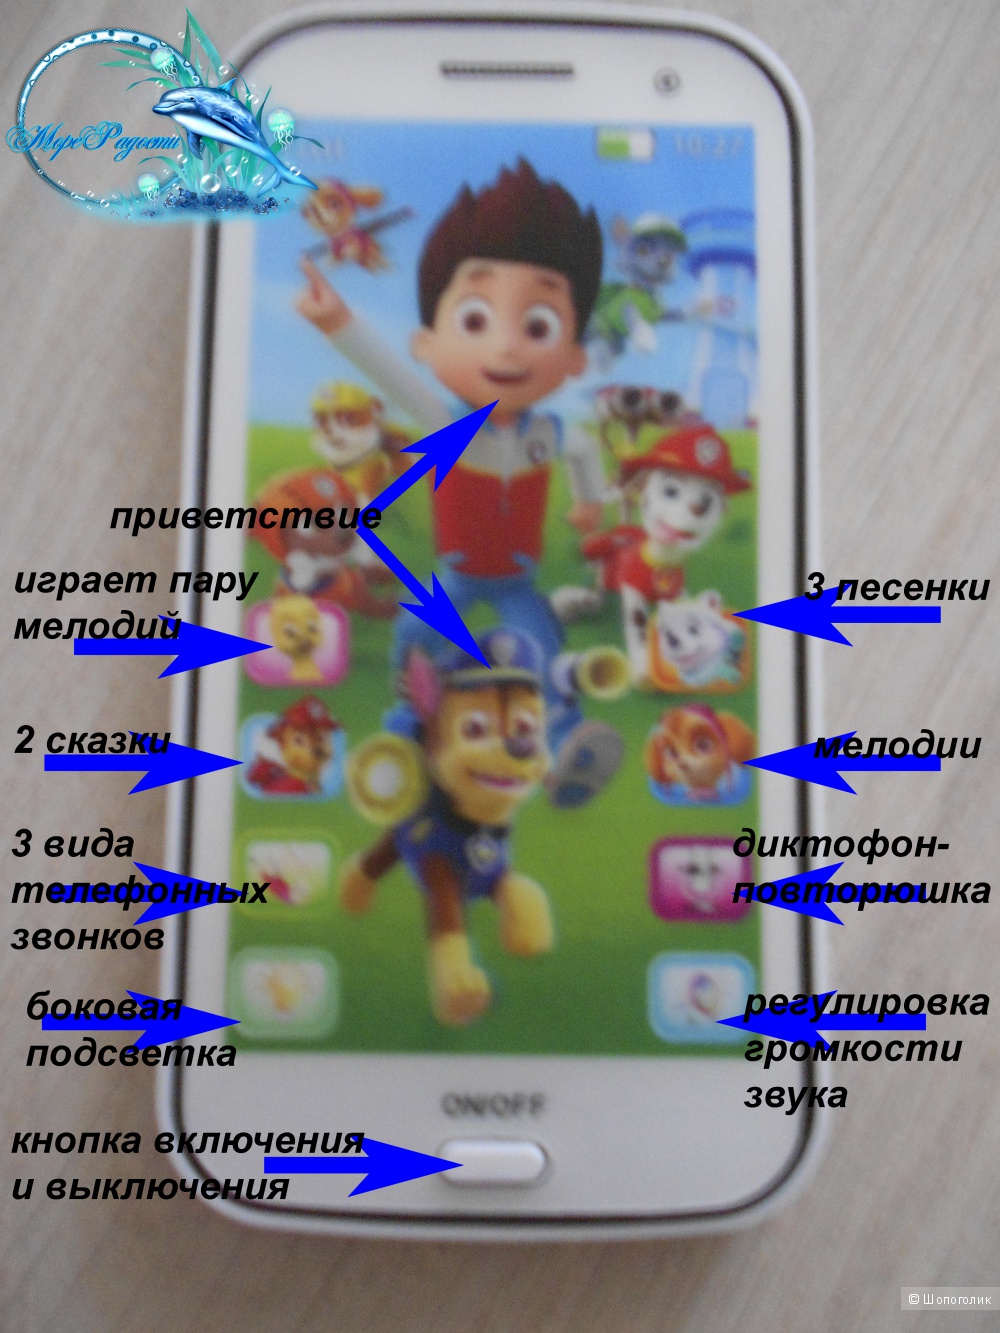 Интерактивный сенсорный детский телефон Щенячий Патруль